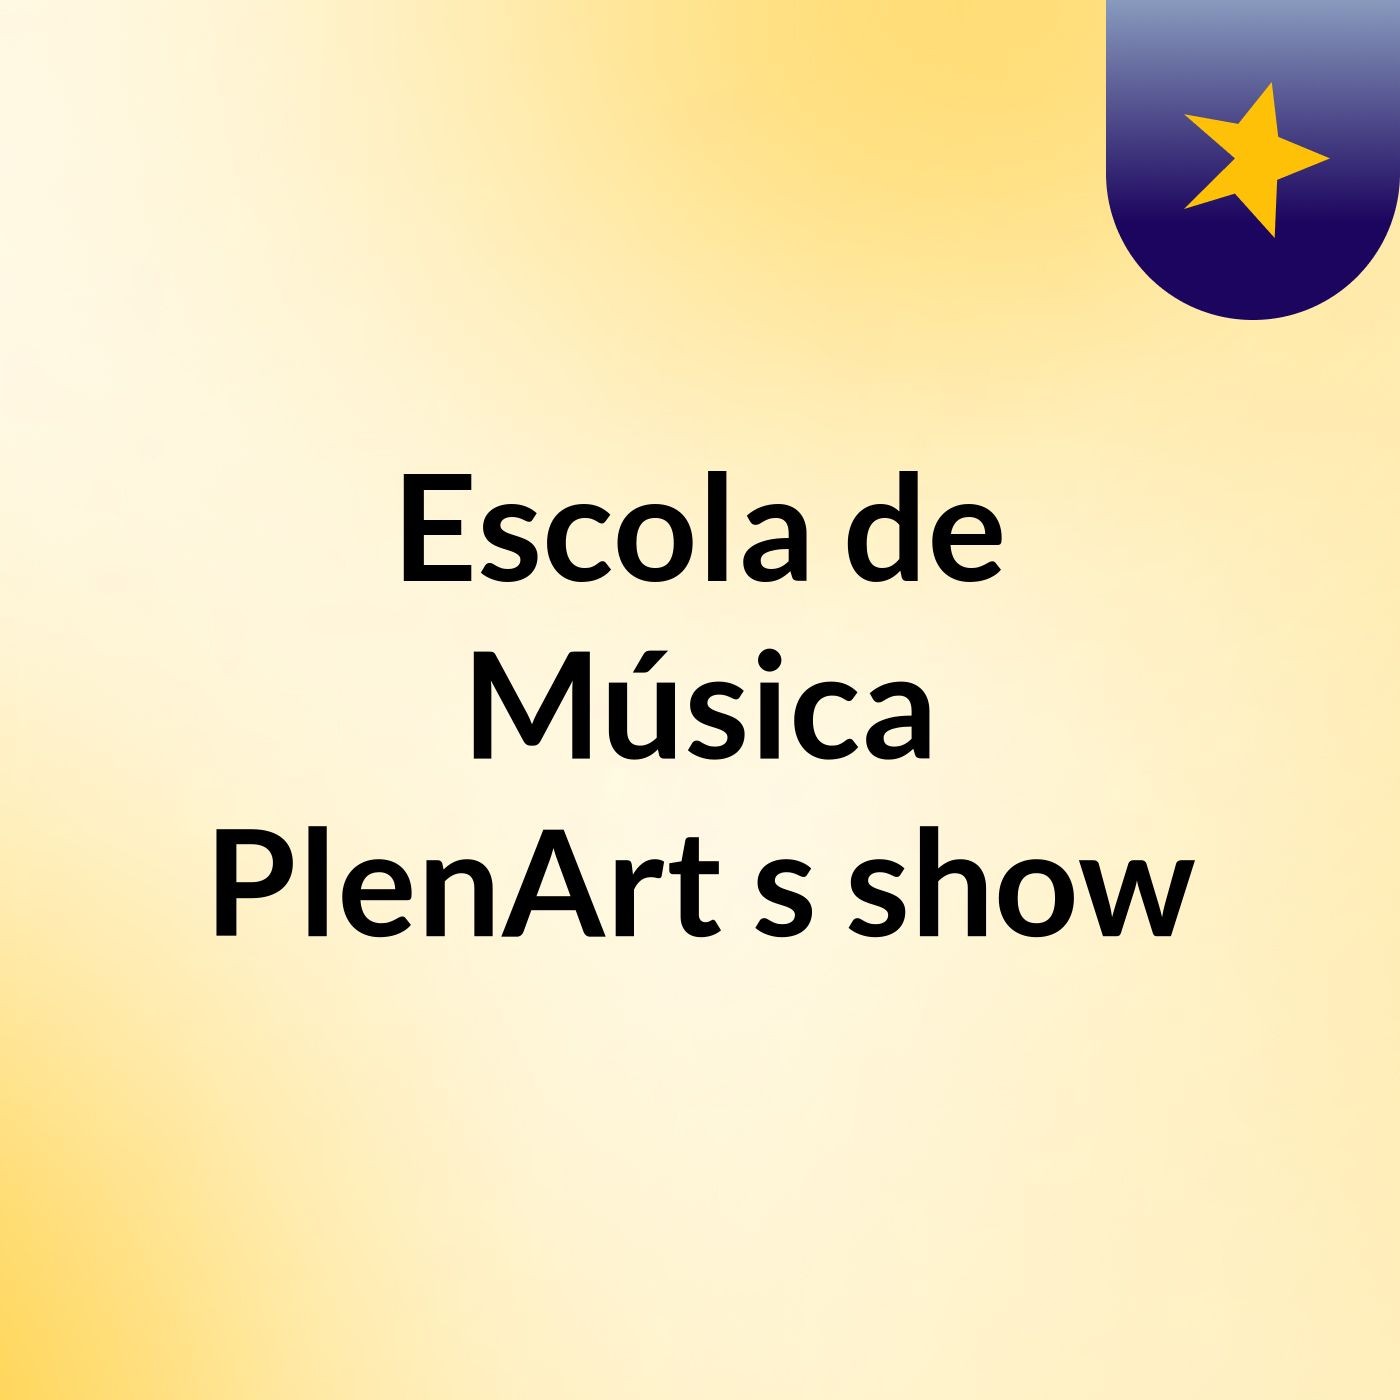 Escola de Música PlenArt's show